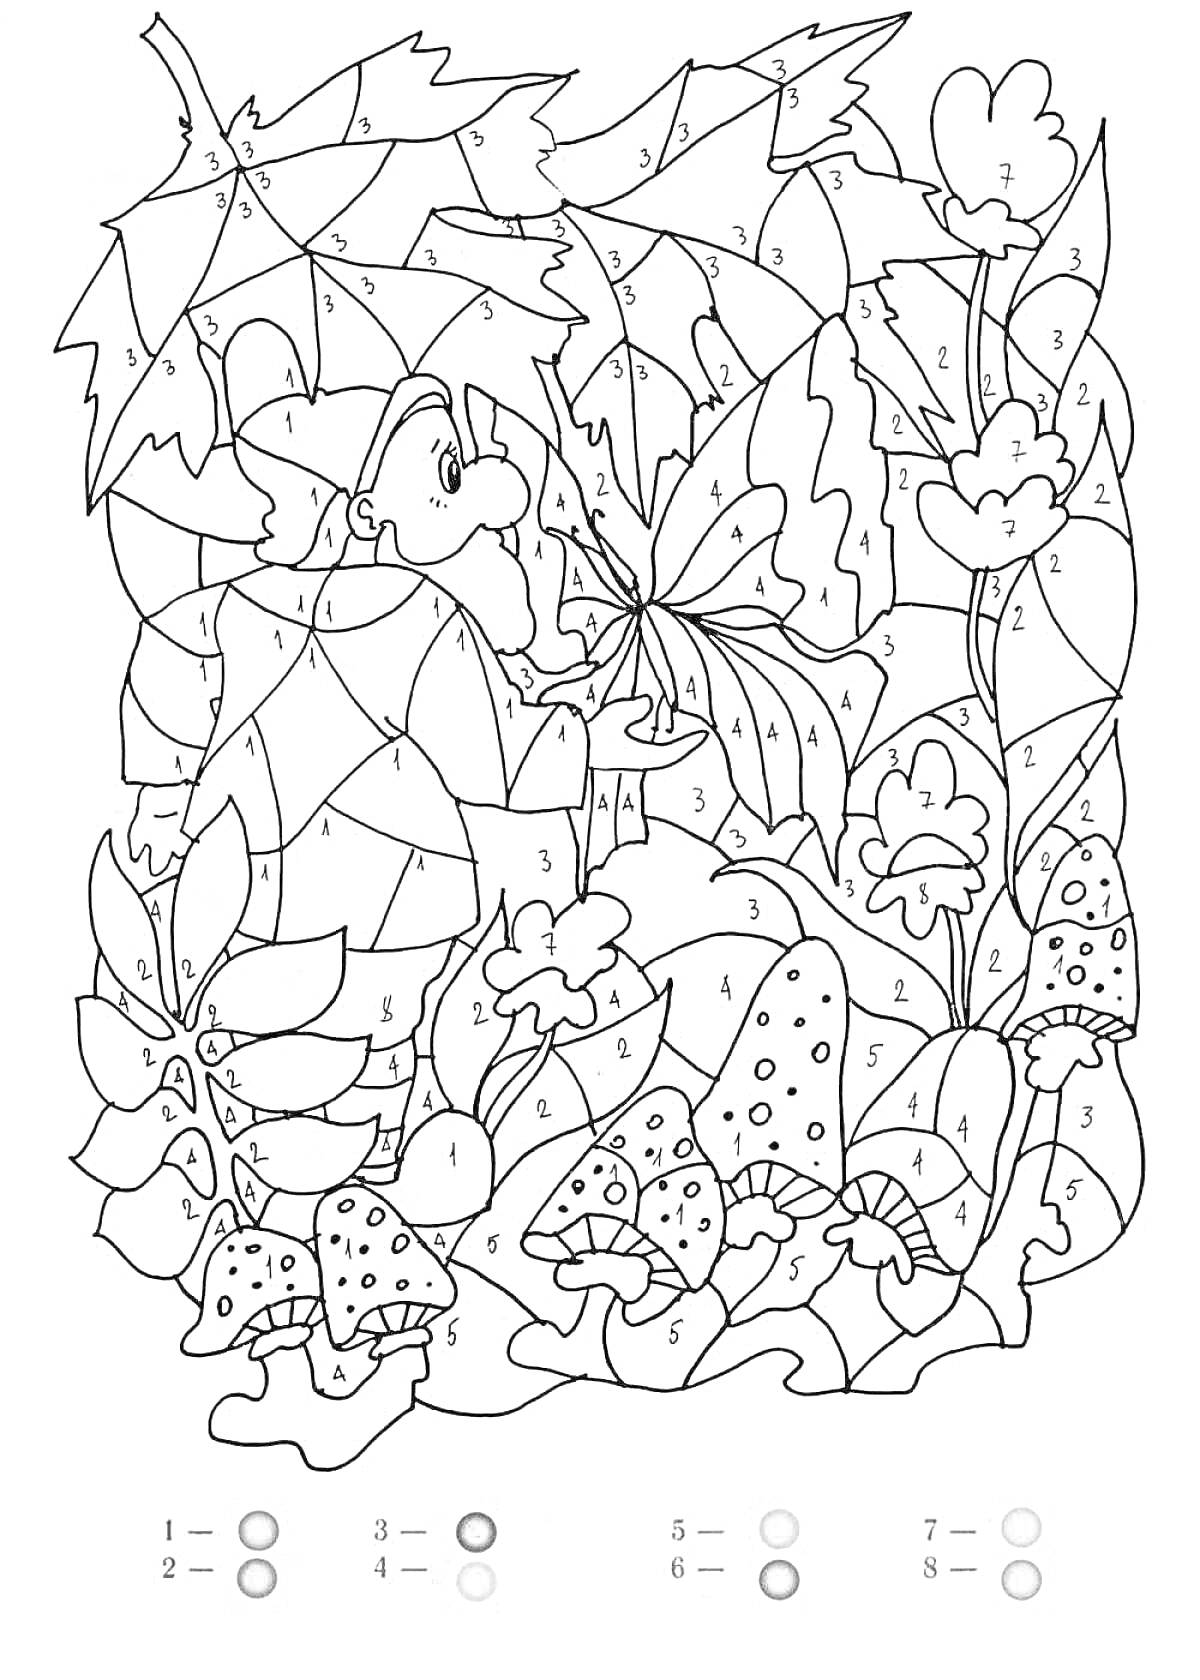 Раскраска Лесной гном с бабочкой среди листьев, грибов и цветов